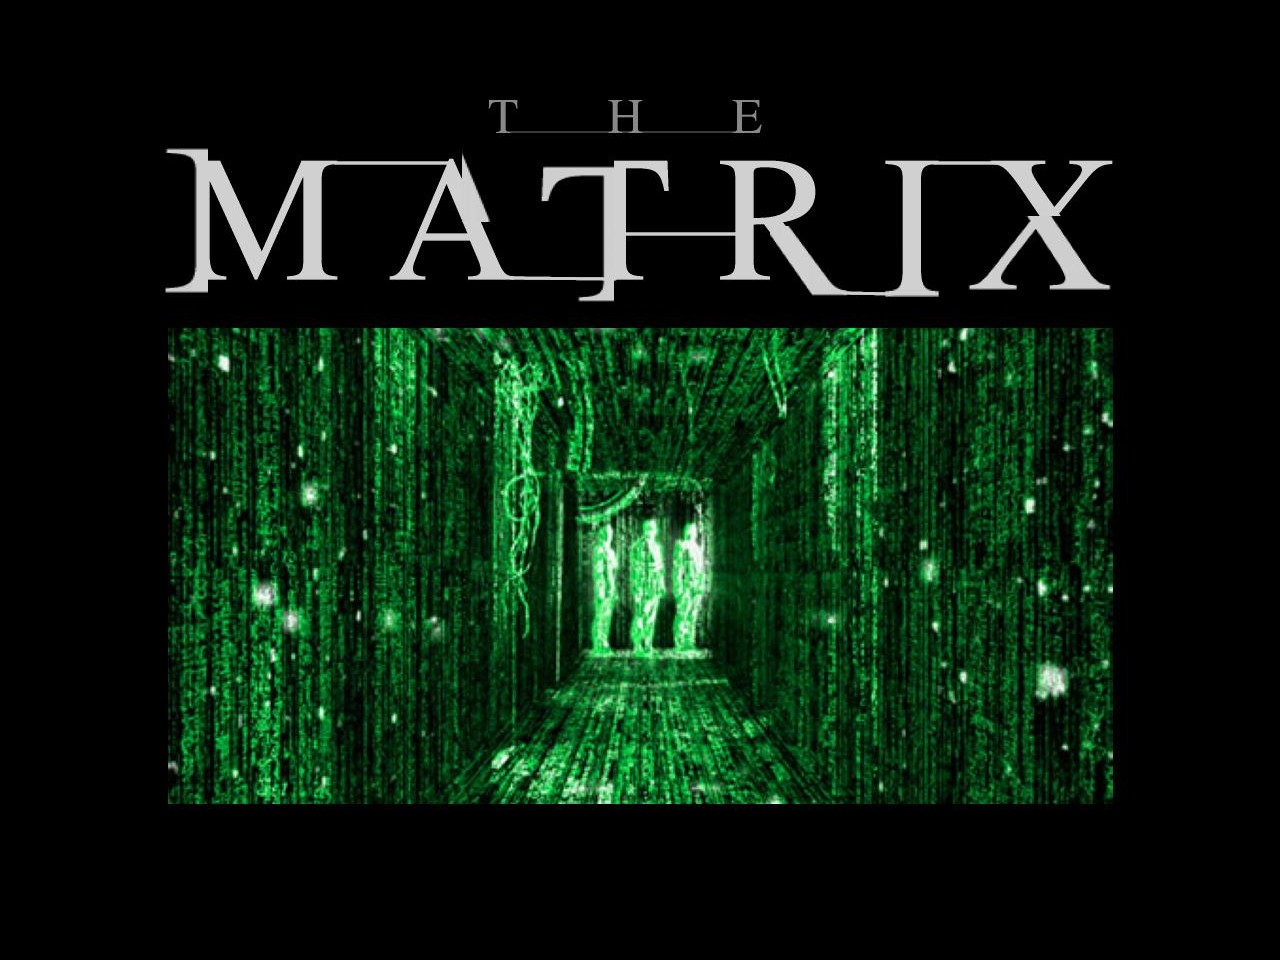 "The Matrix" desktop wallpaper number 2 (1280 x 960 pixels)